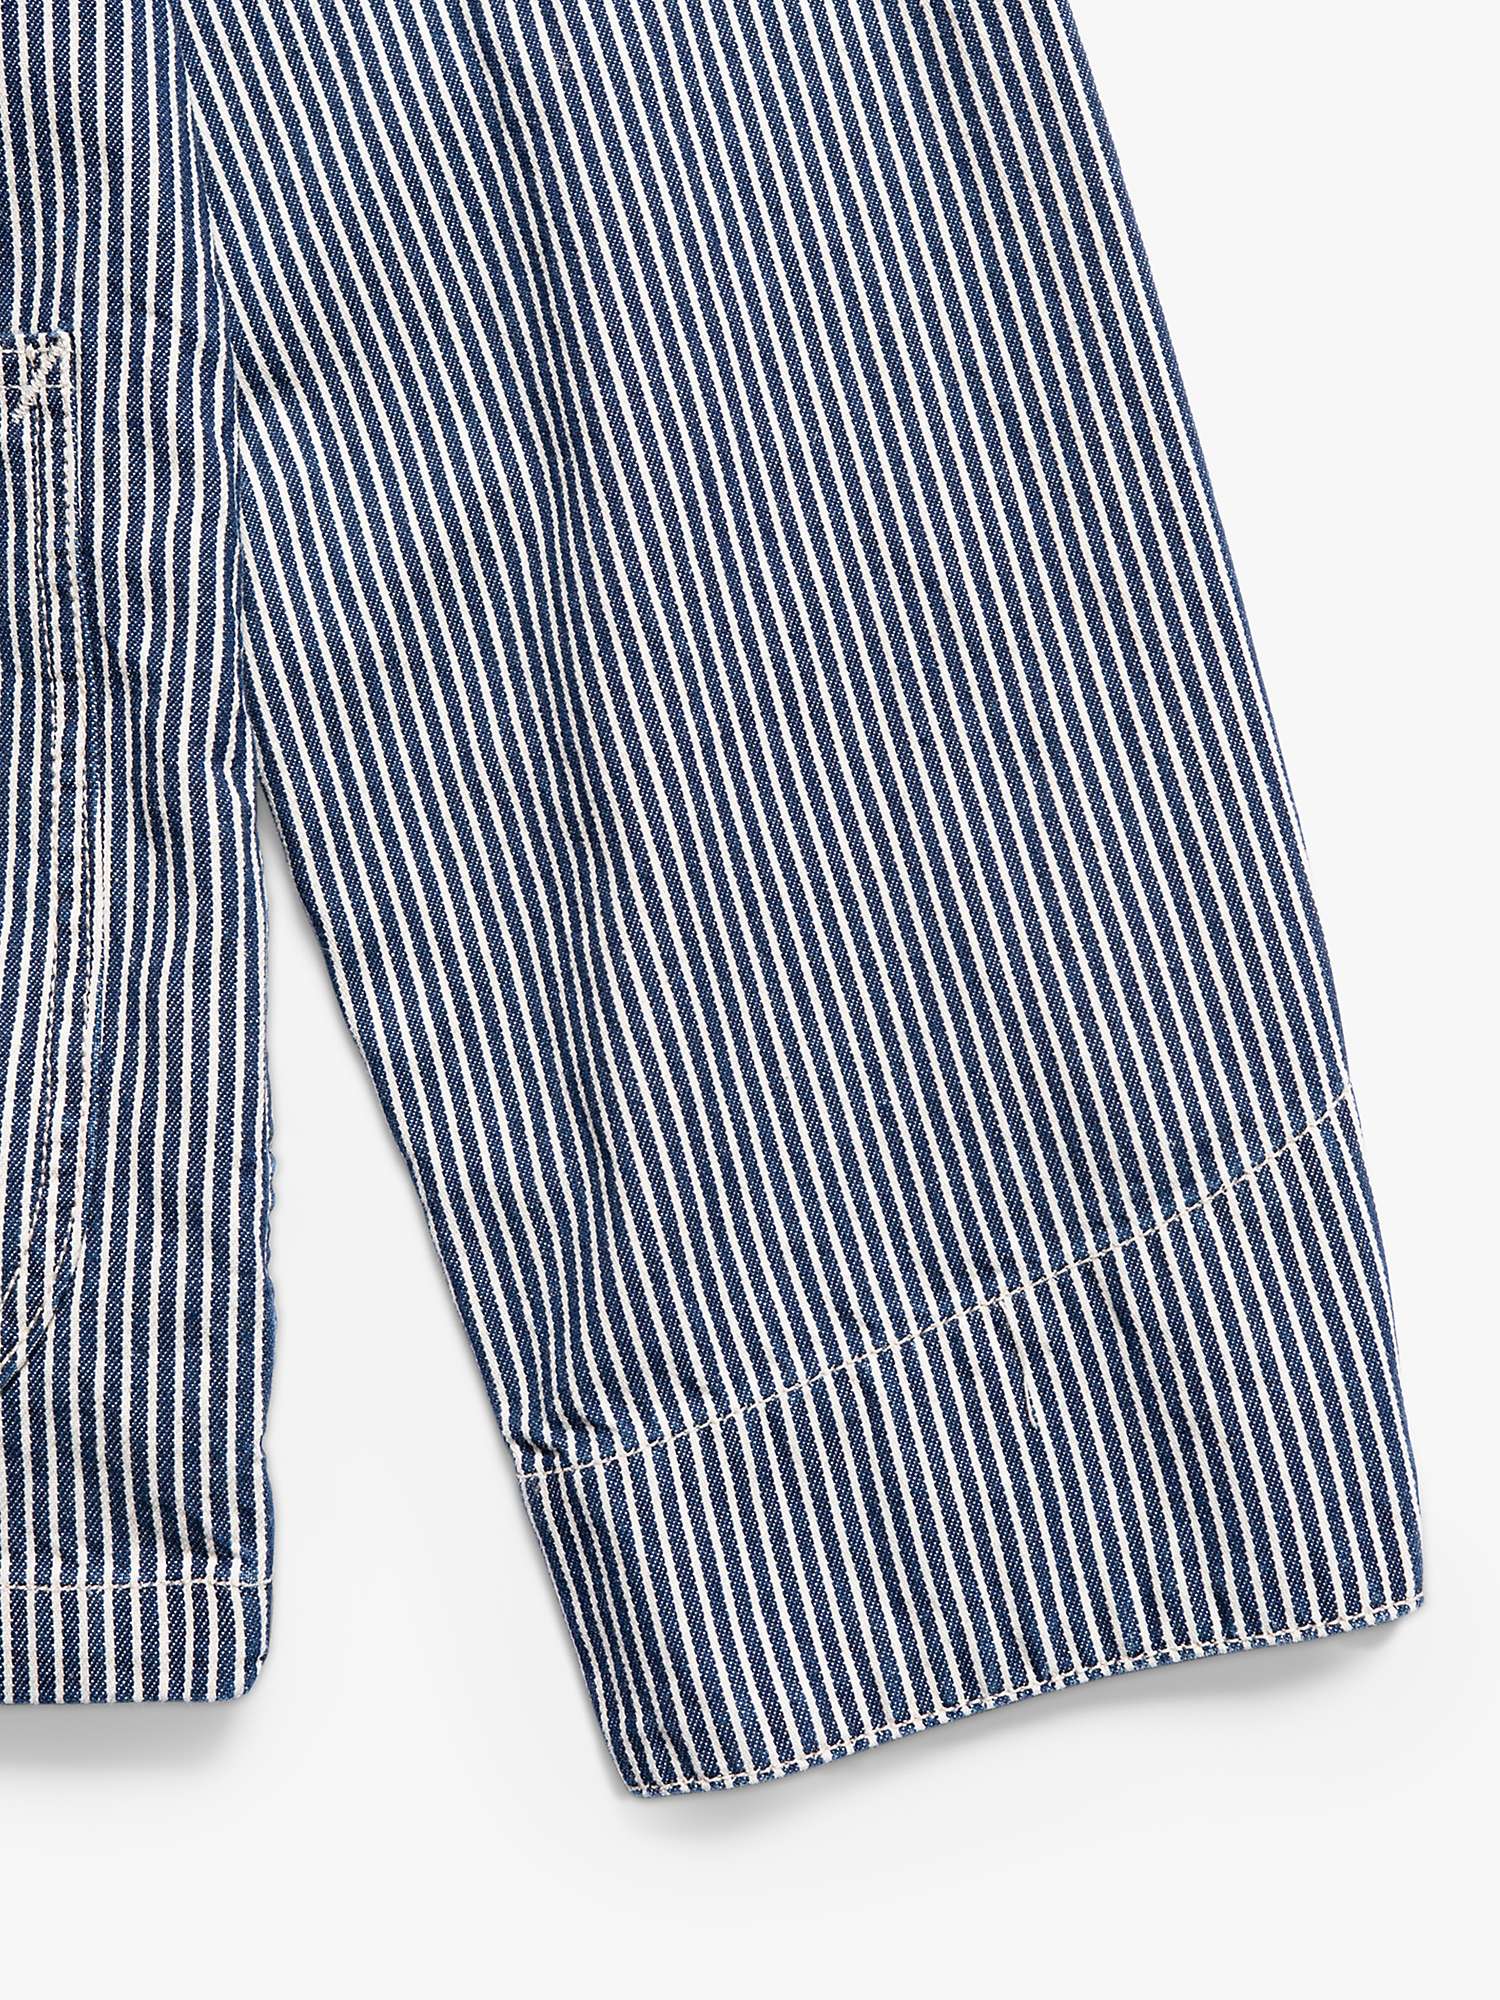 Buy Nudie Jeans Howie Chore Jacket, Multi Online at johnlewis.com